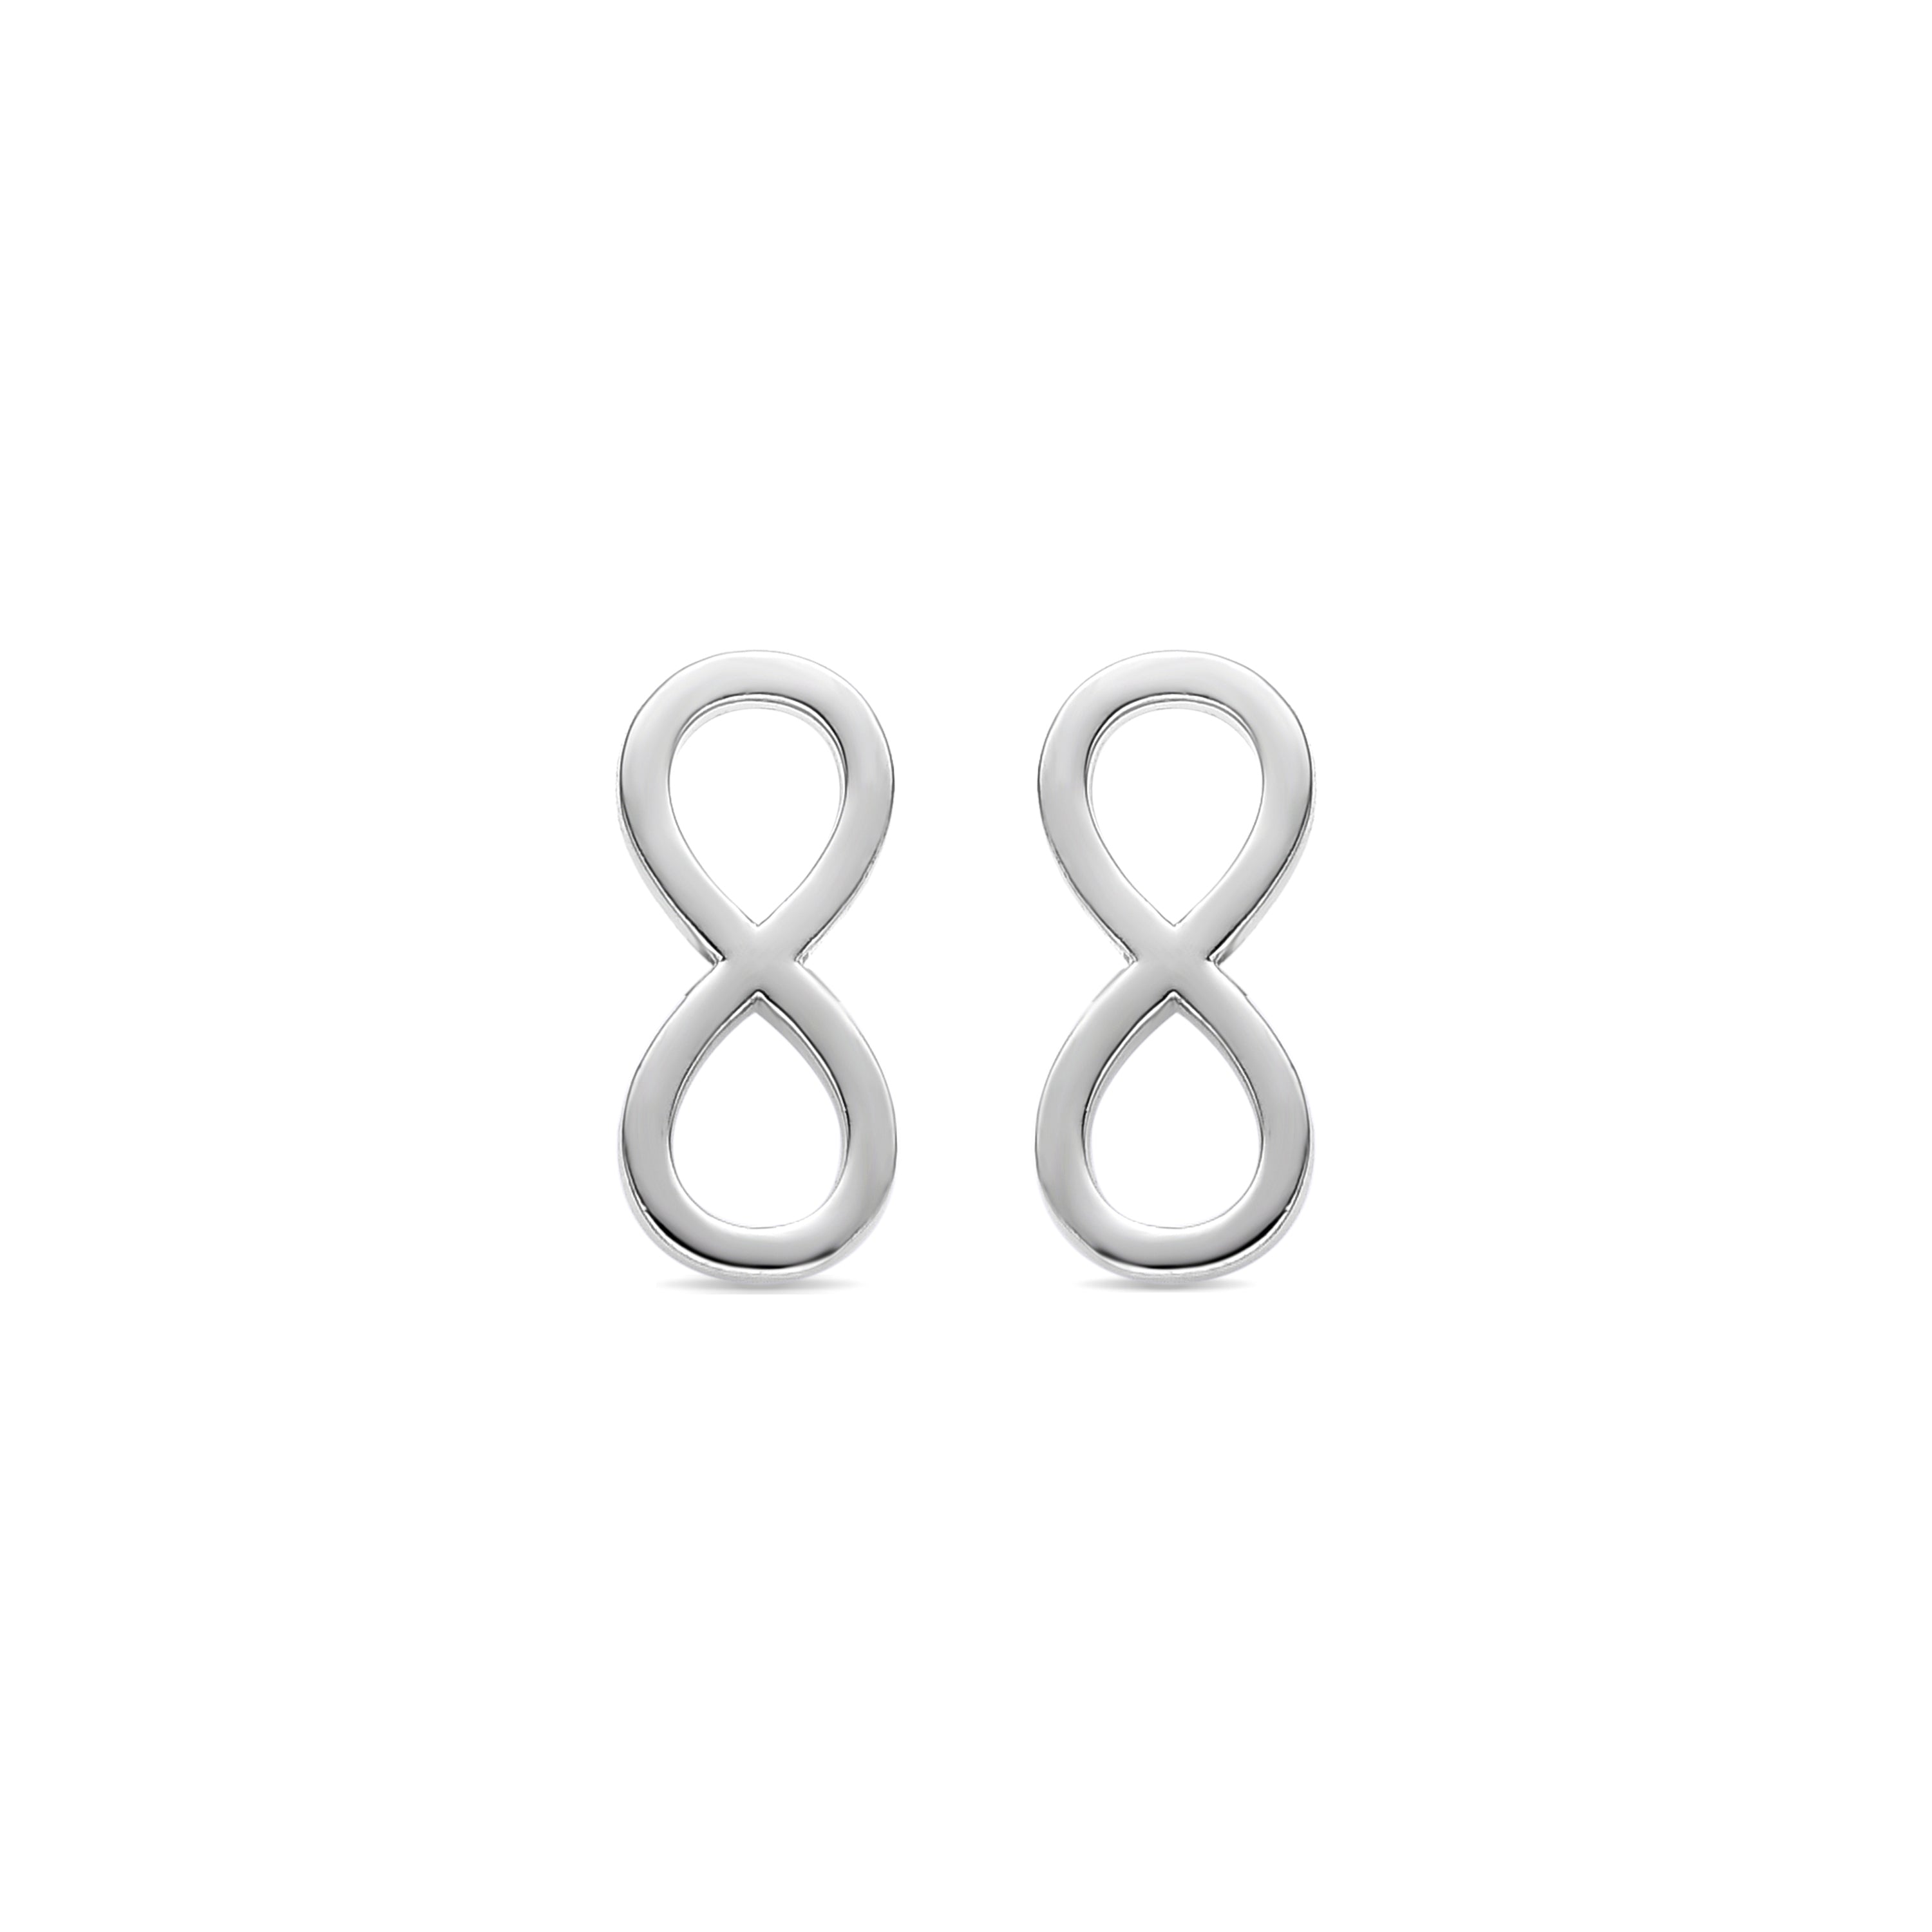 Infinity silver finish earrings